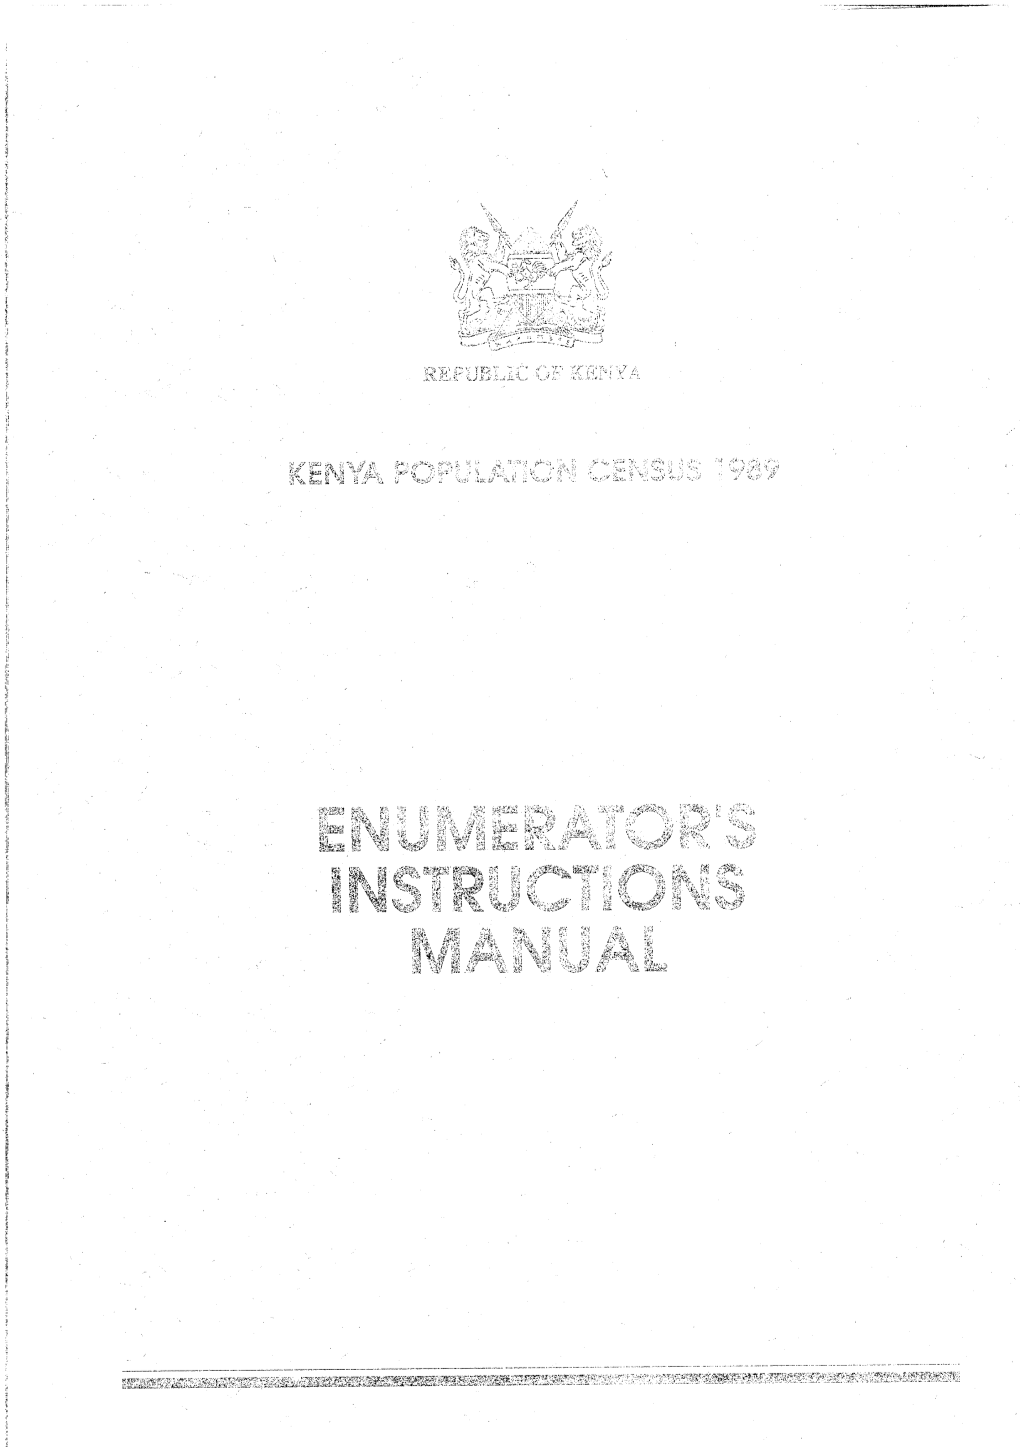 Kenya 1989 Enumerator's Manual